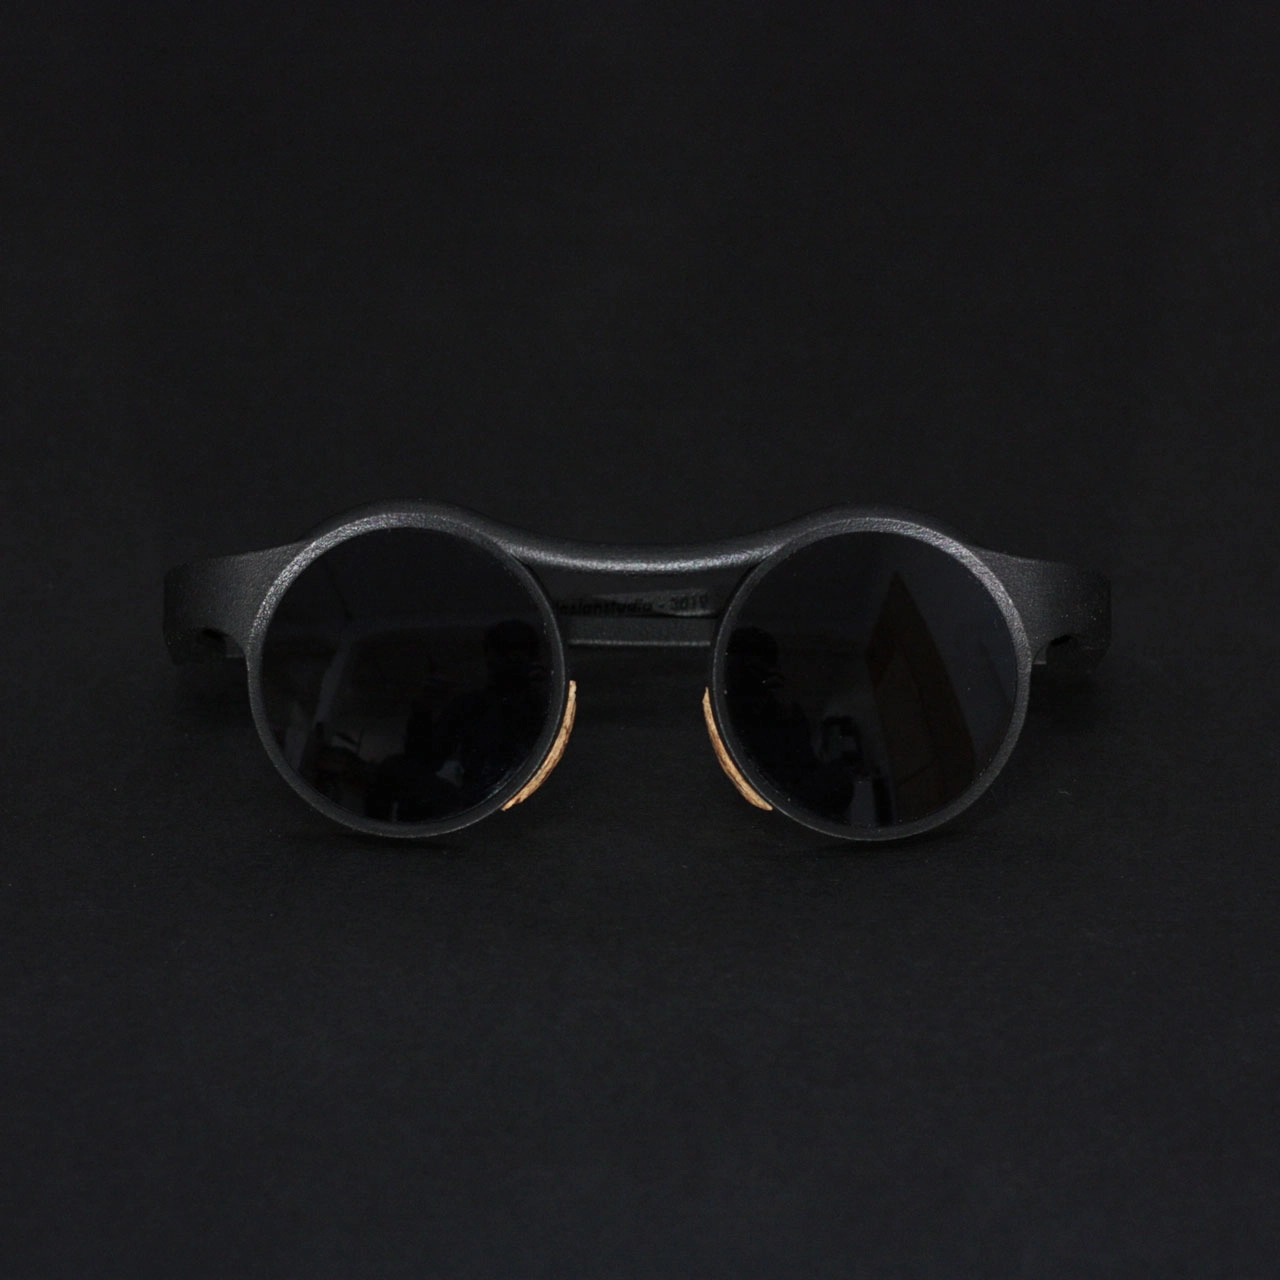 lunette chain repliée sur fond noir